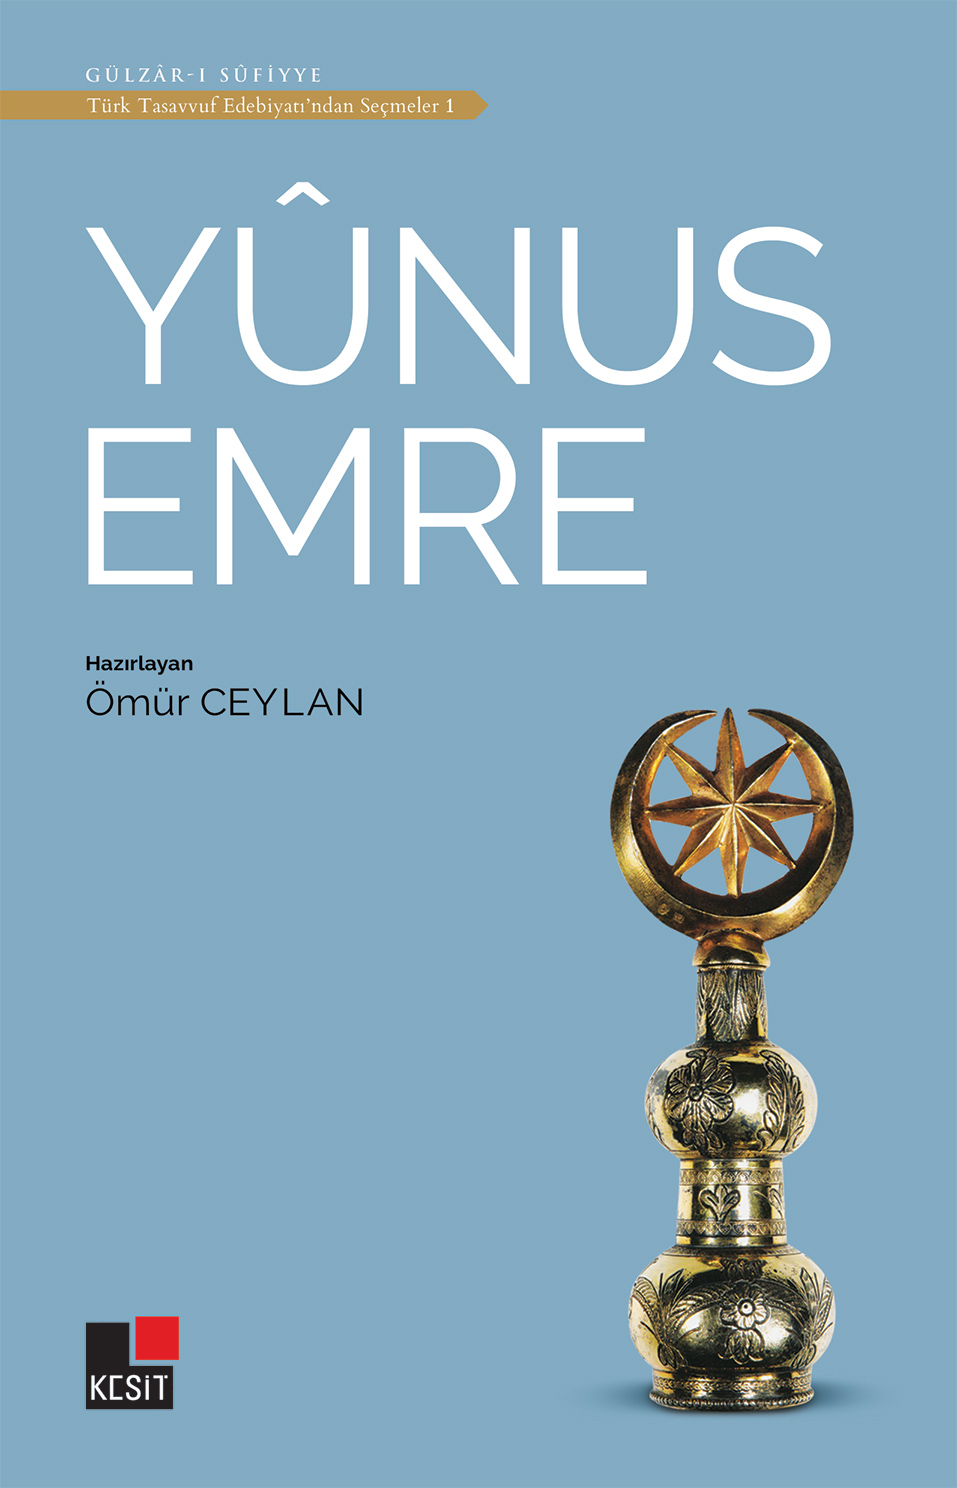 Yûnus Emre / Türk tasavvuf edebiyatından seçmeler 1